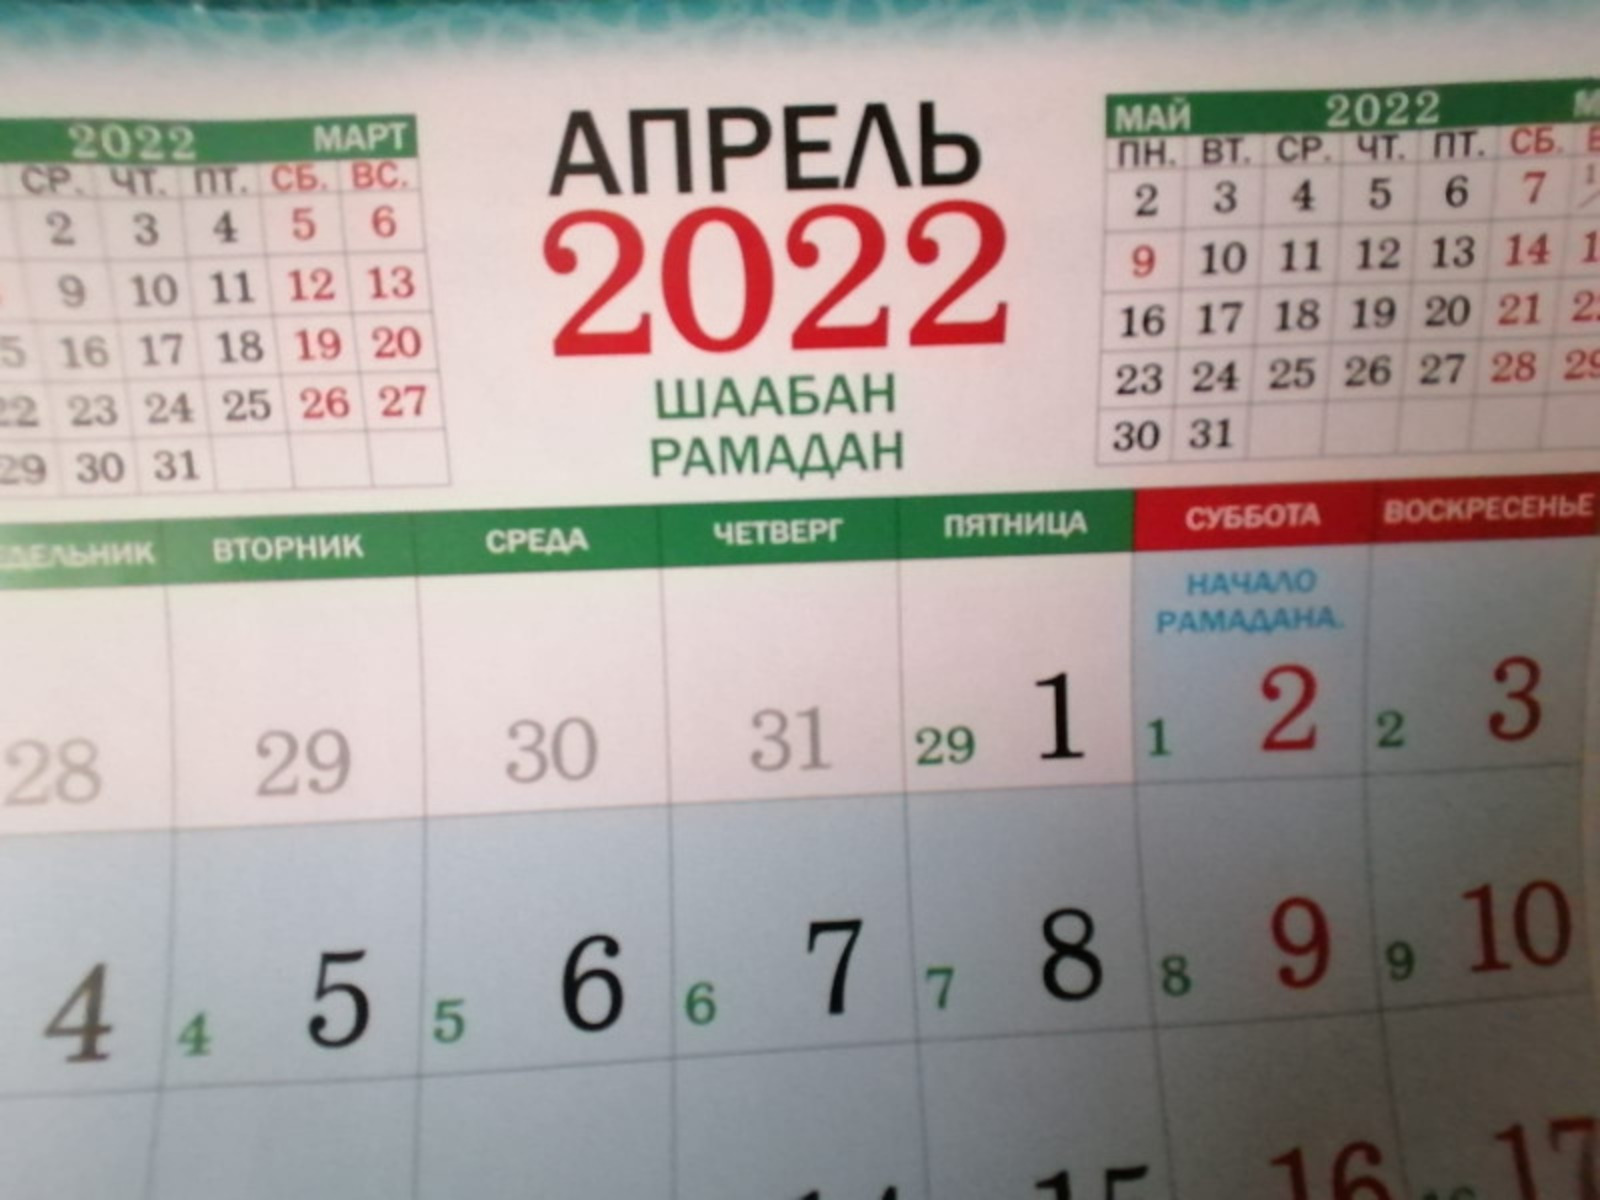 Дата уразы в 2024